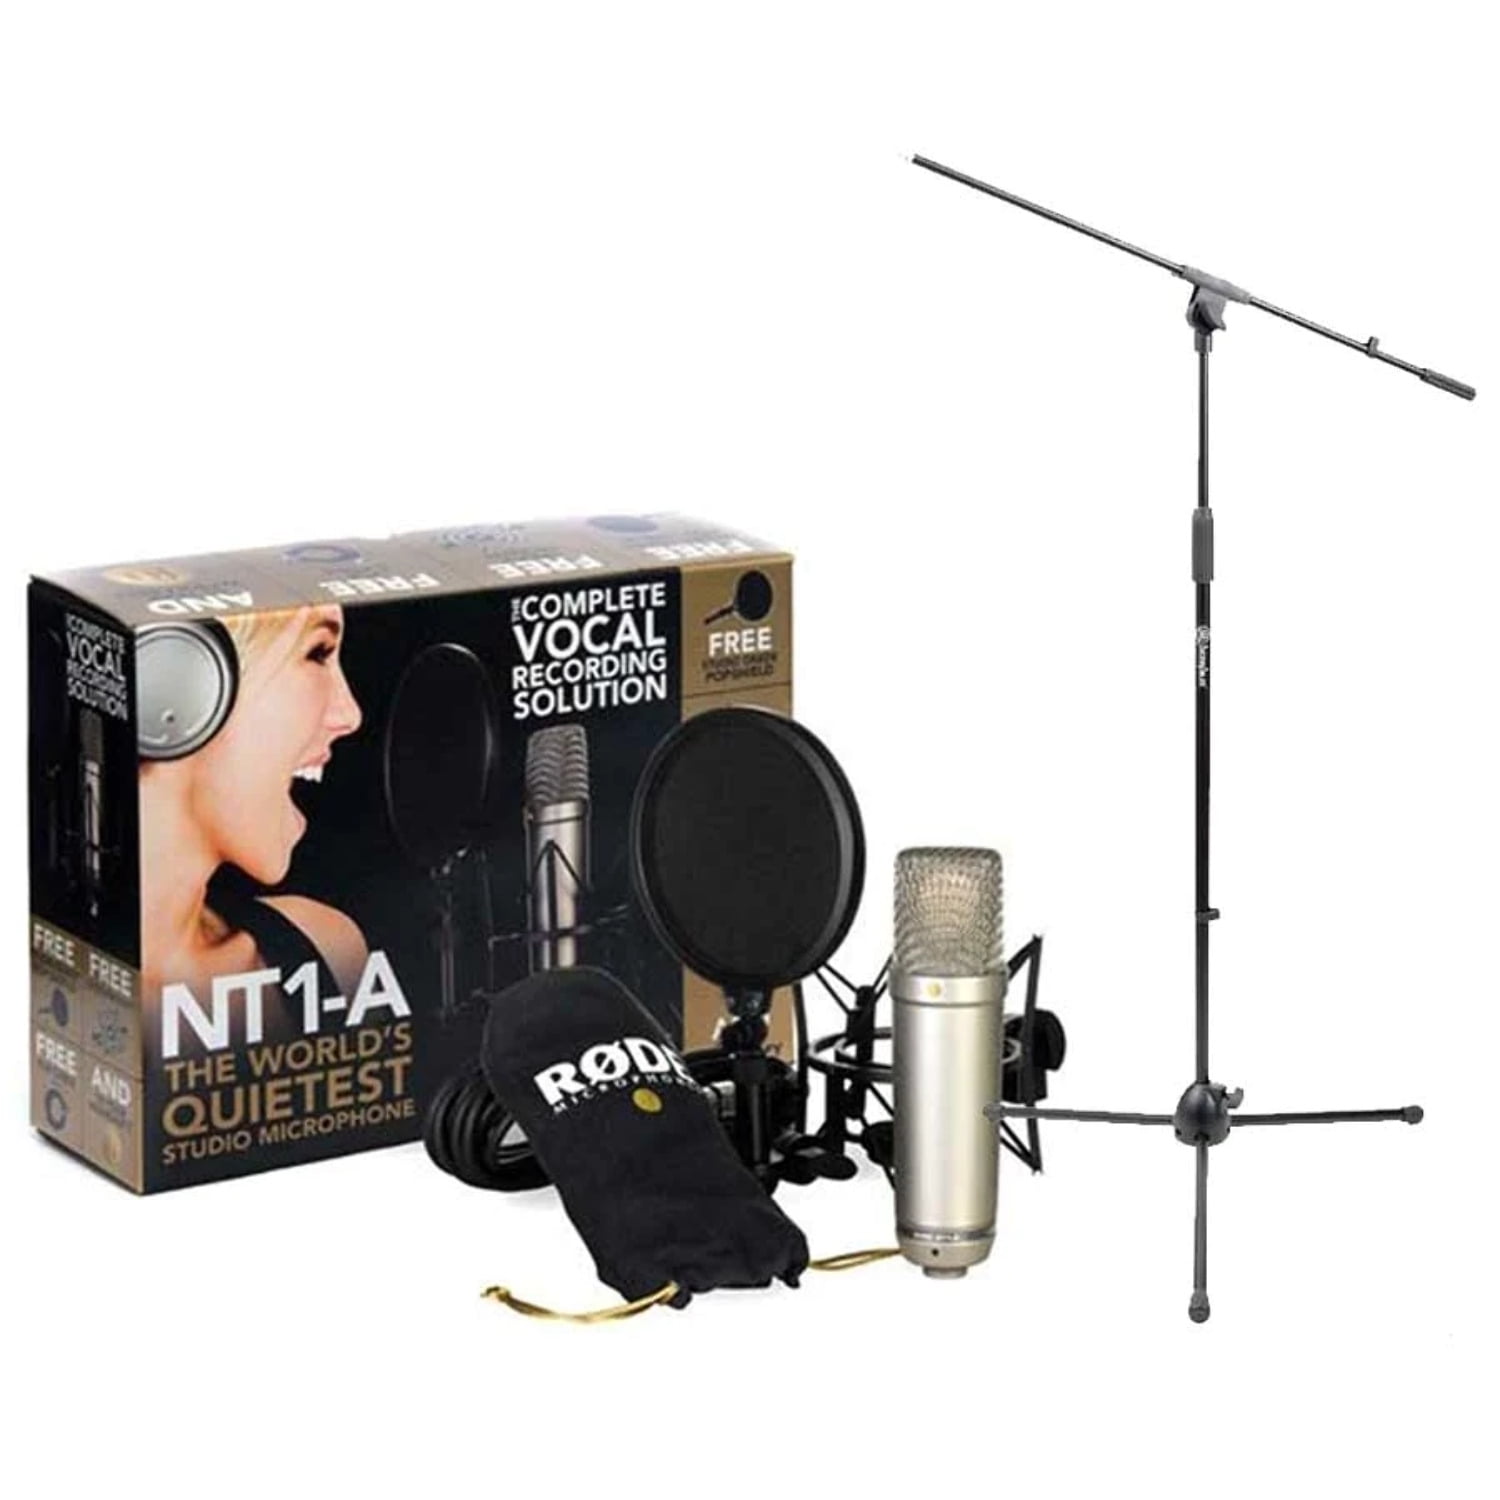 Rode NT1A – Paquete de micrófono condensador vocal de aniversario